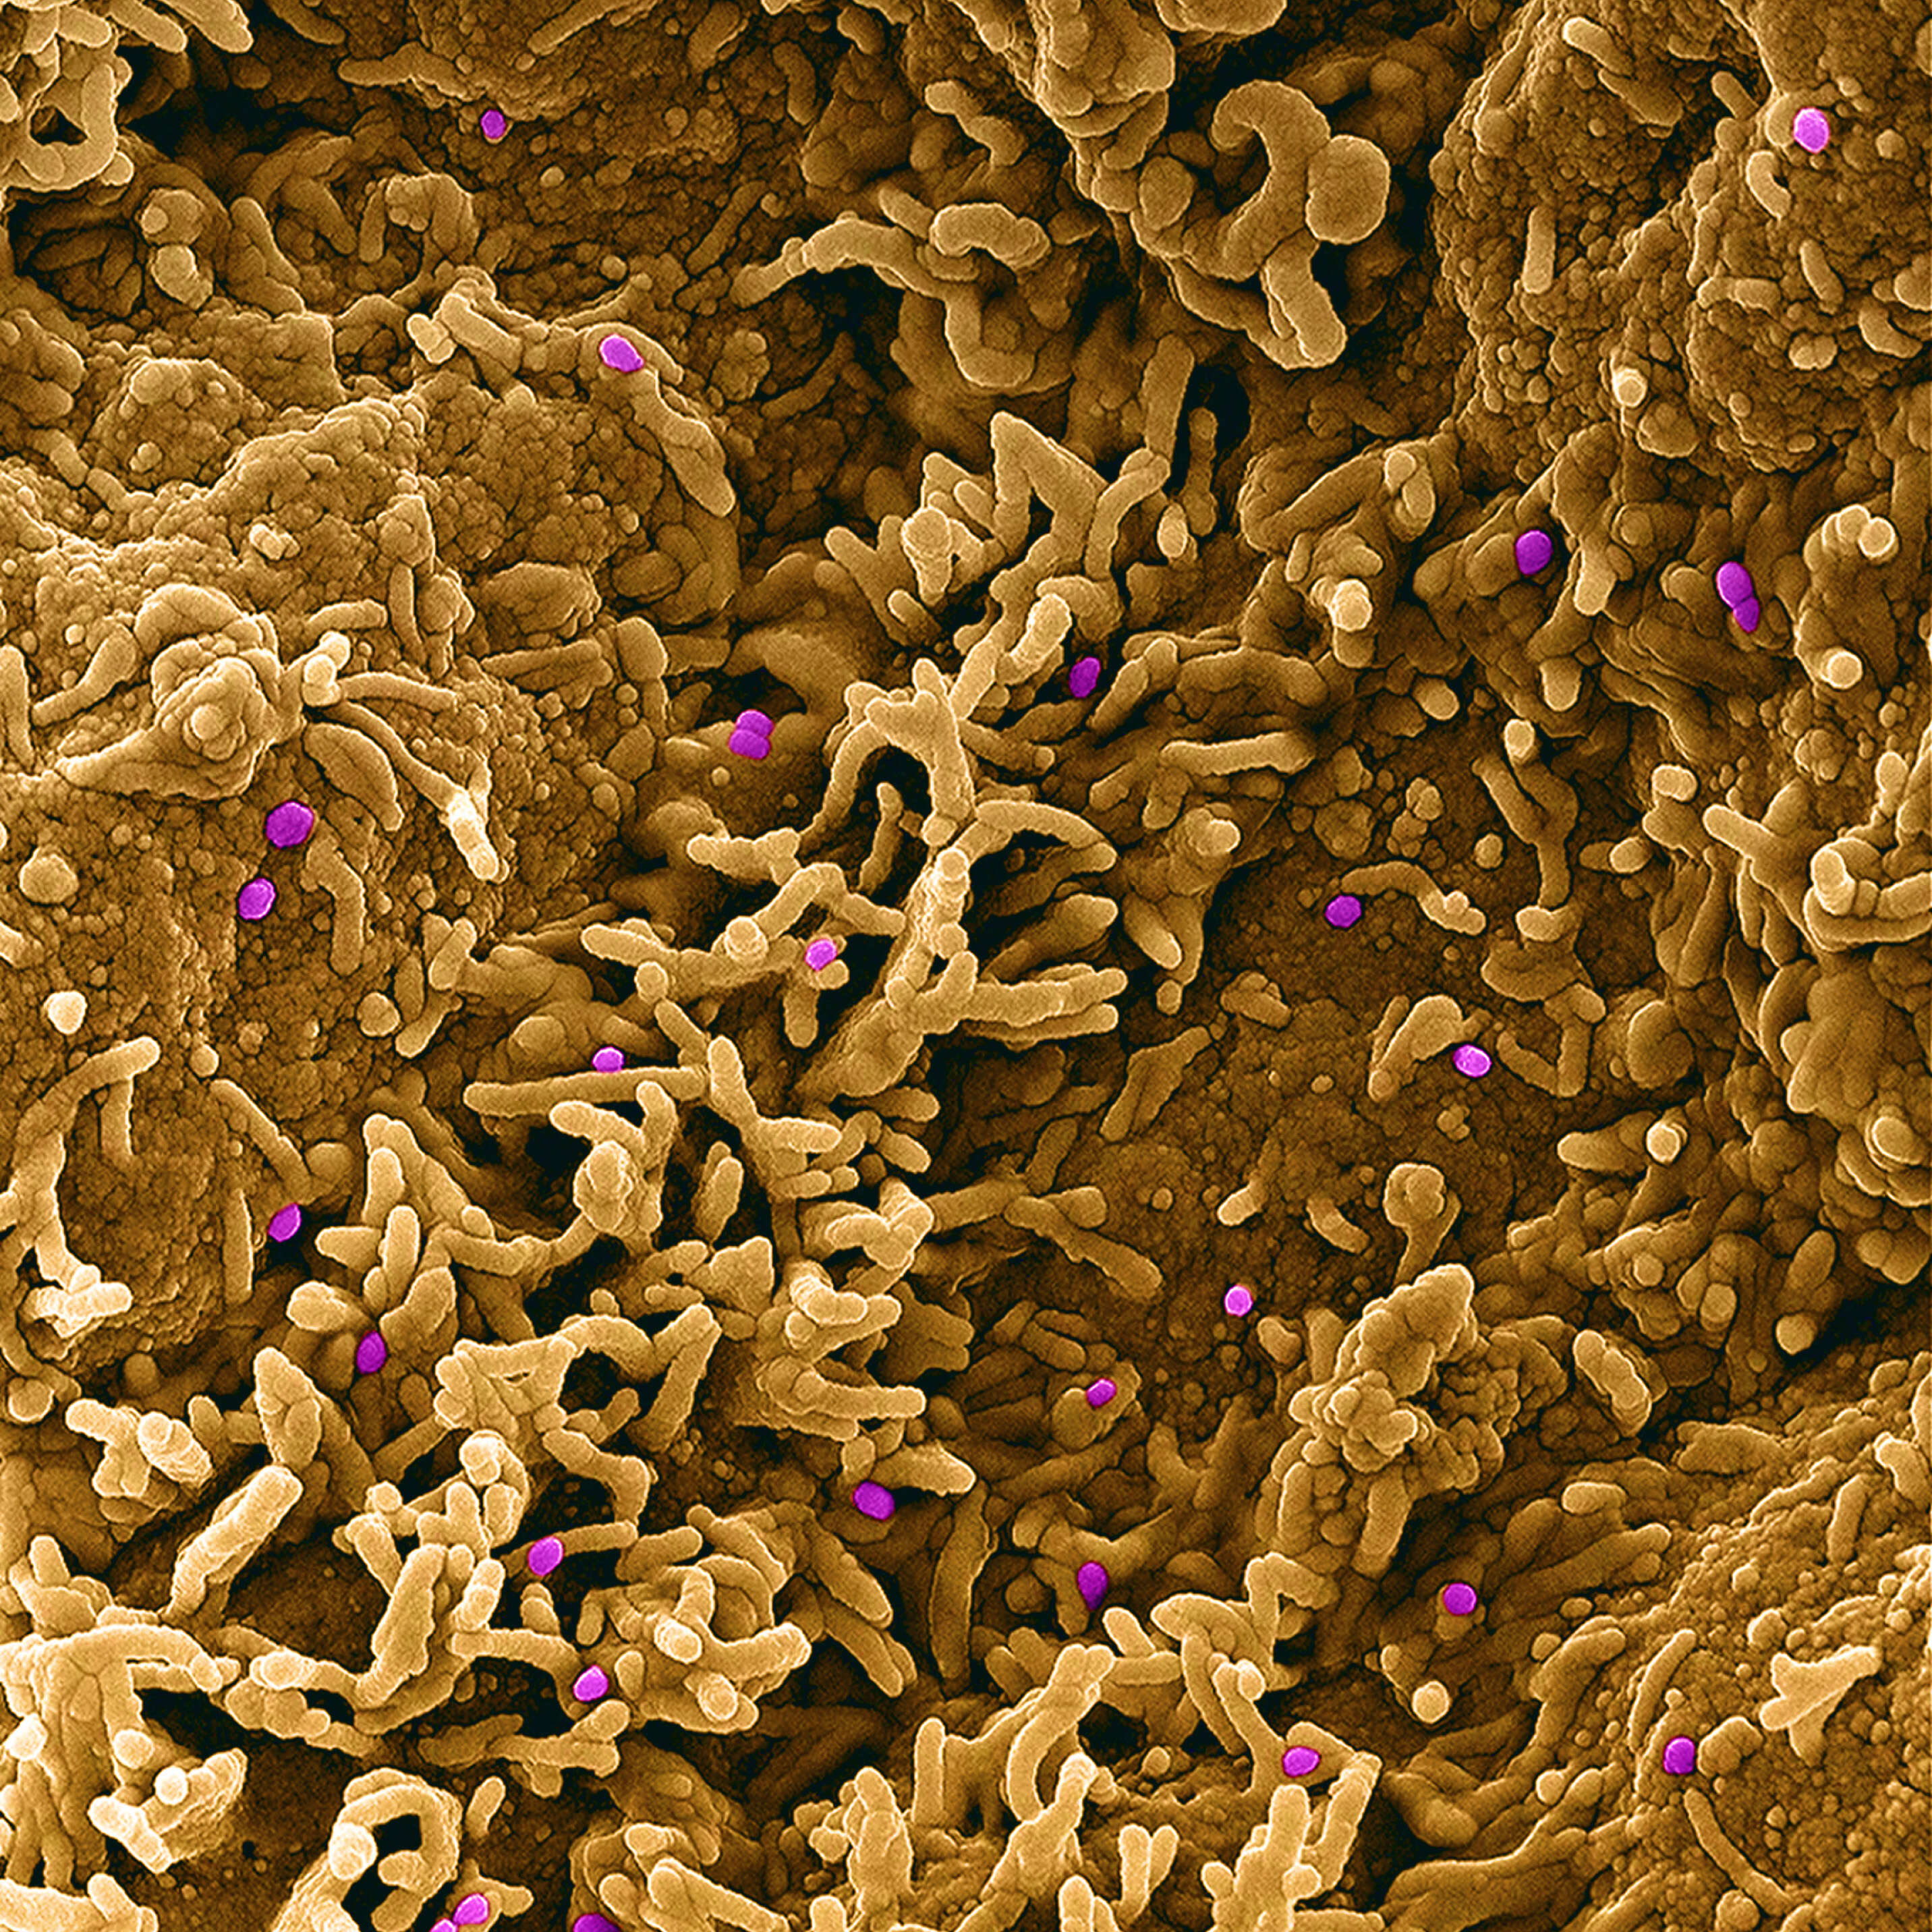 صورة فيروس جدري النسناس